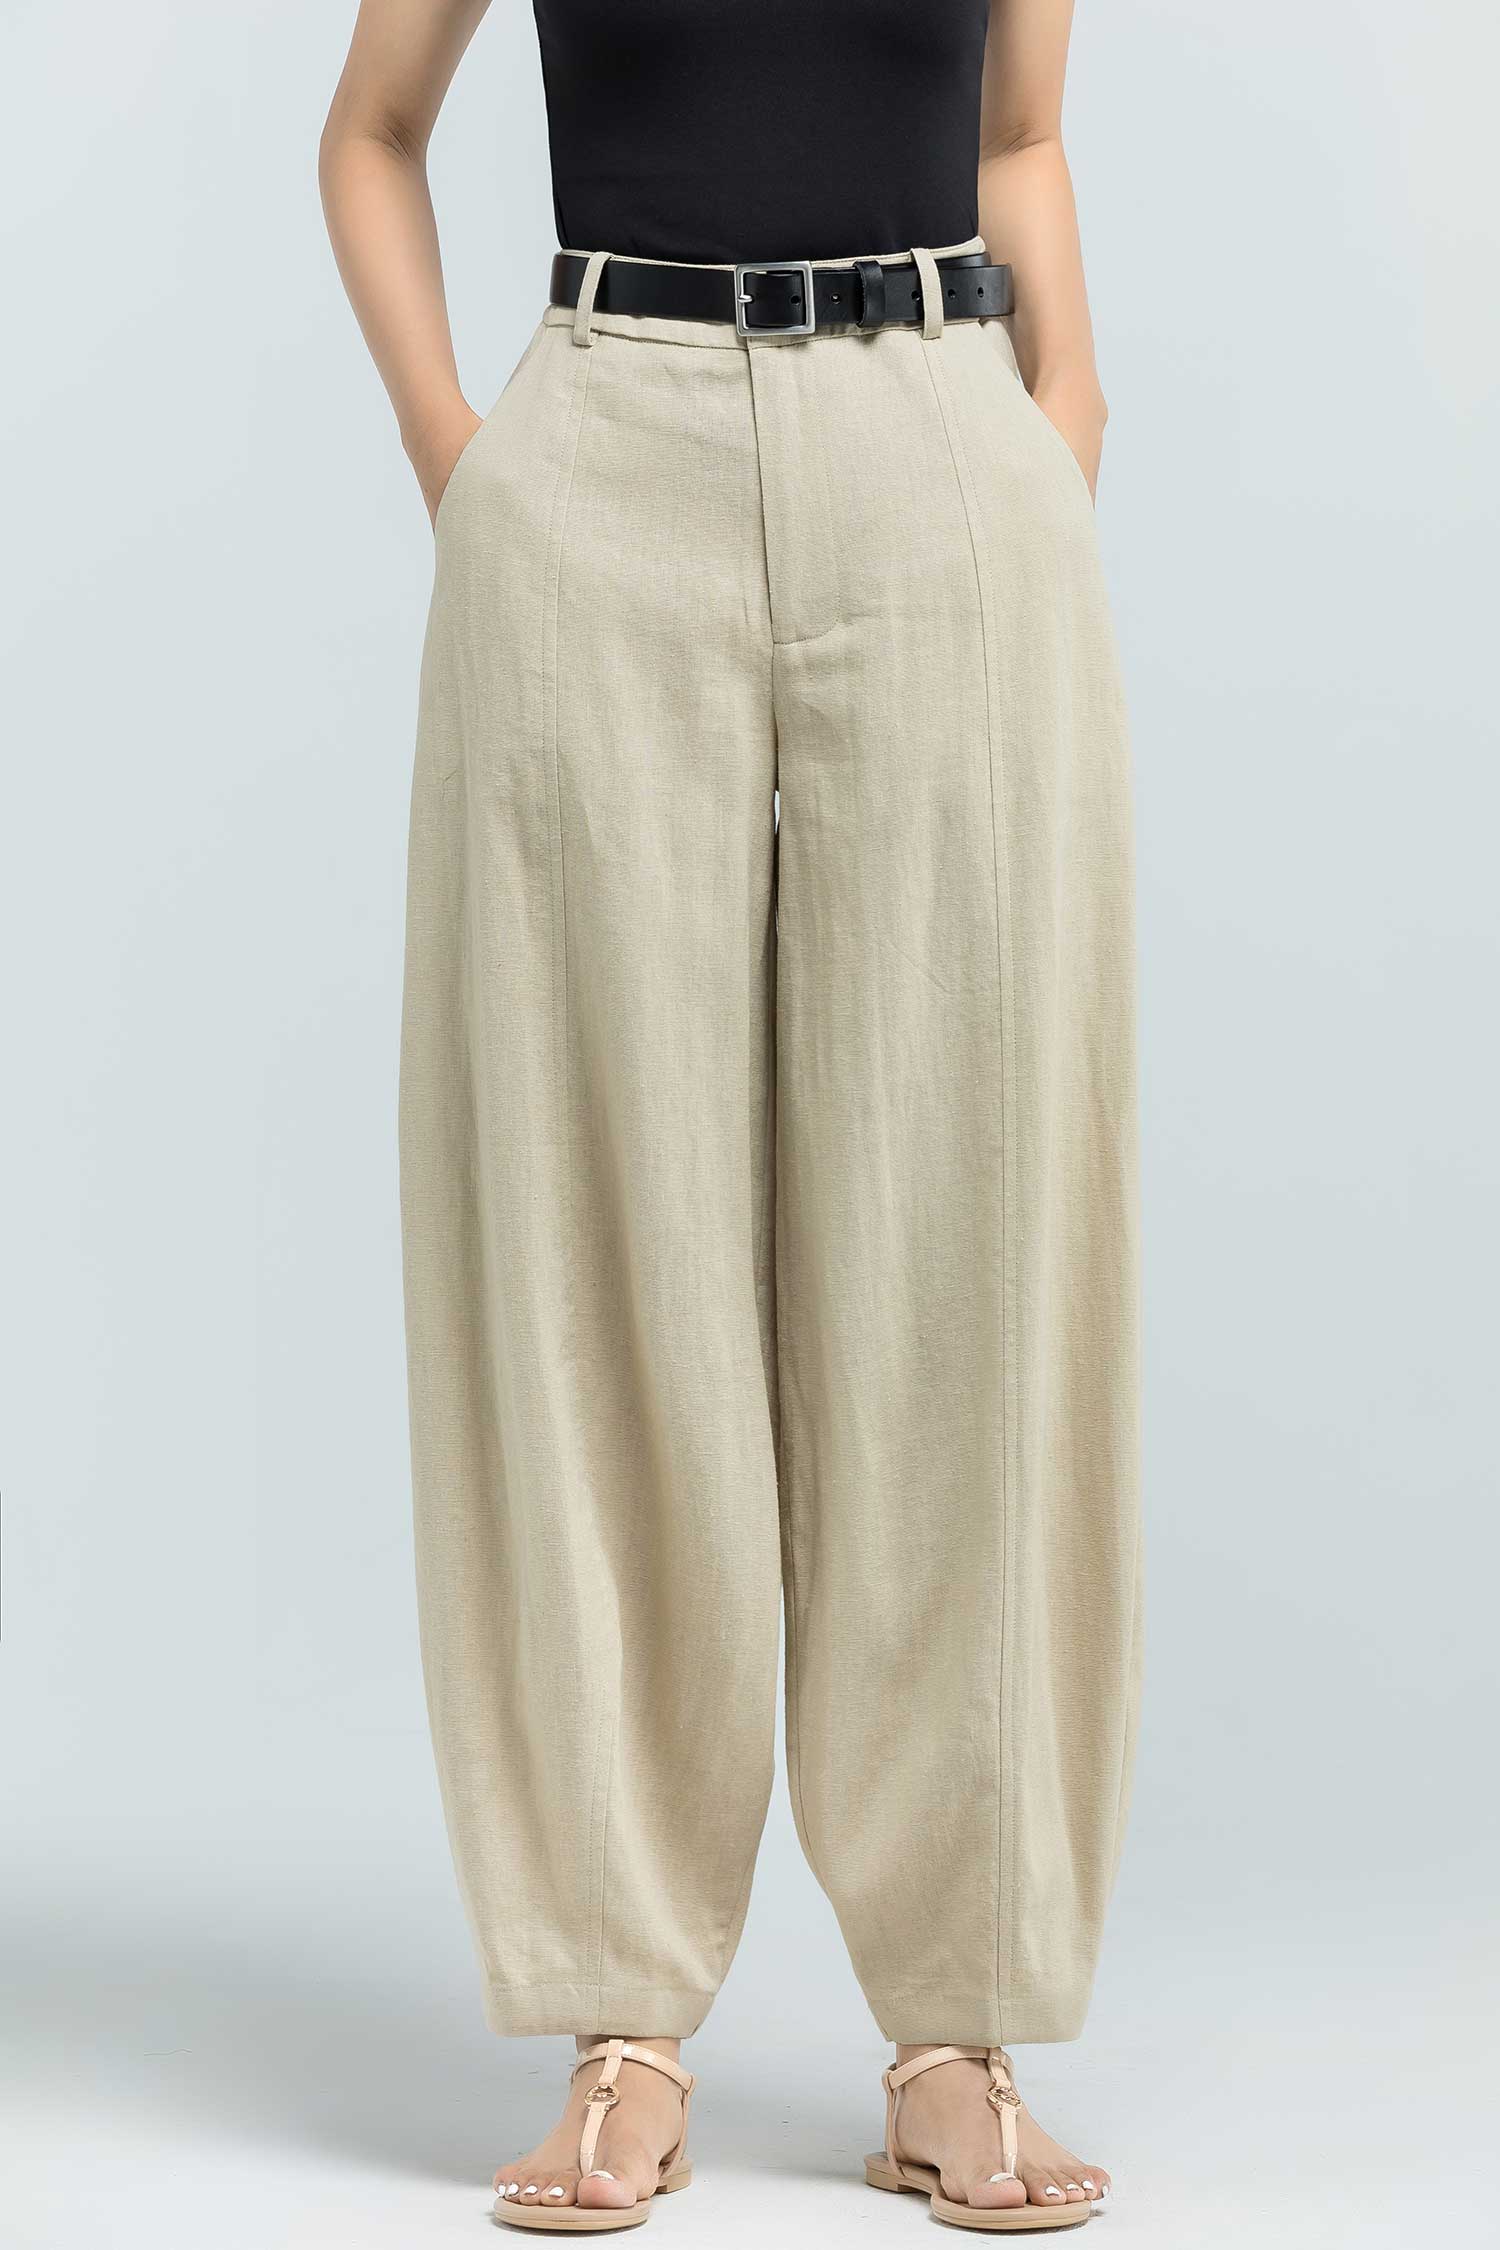 Linen pants women, high waisted pants, wide leg pants XS-US2 2380